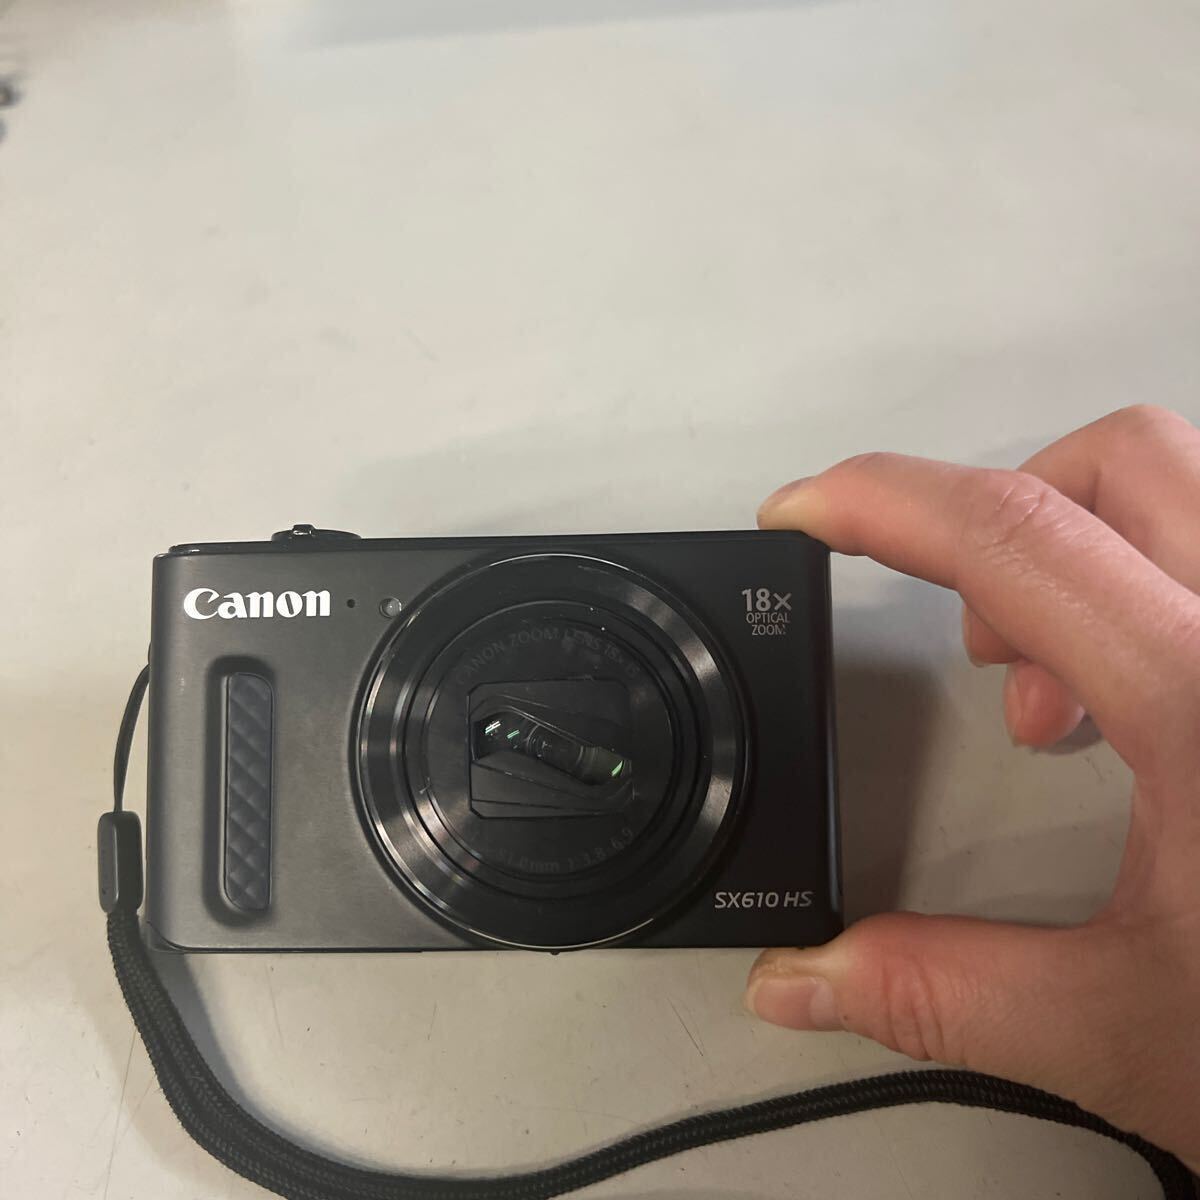 Canon PowerShot SX610 HS PC2191 コンパクトデジタルカメラ バッテリーなし ジャンク